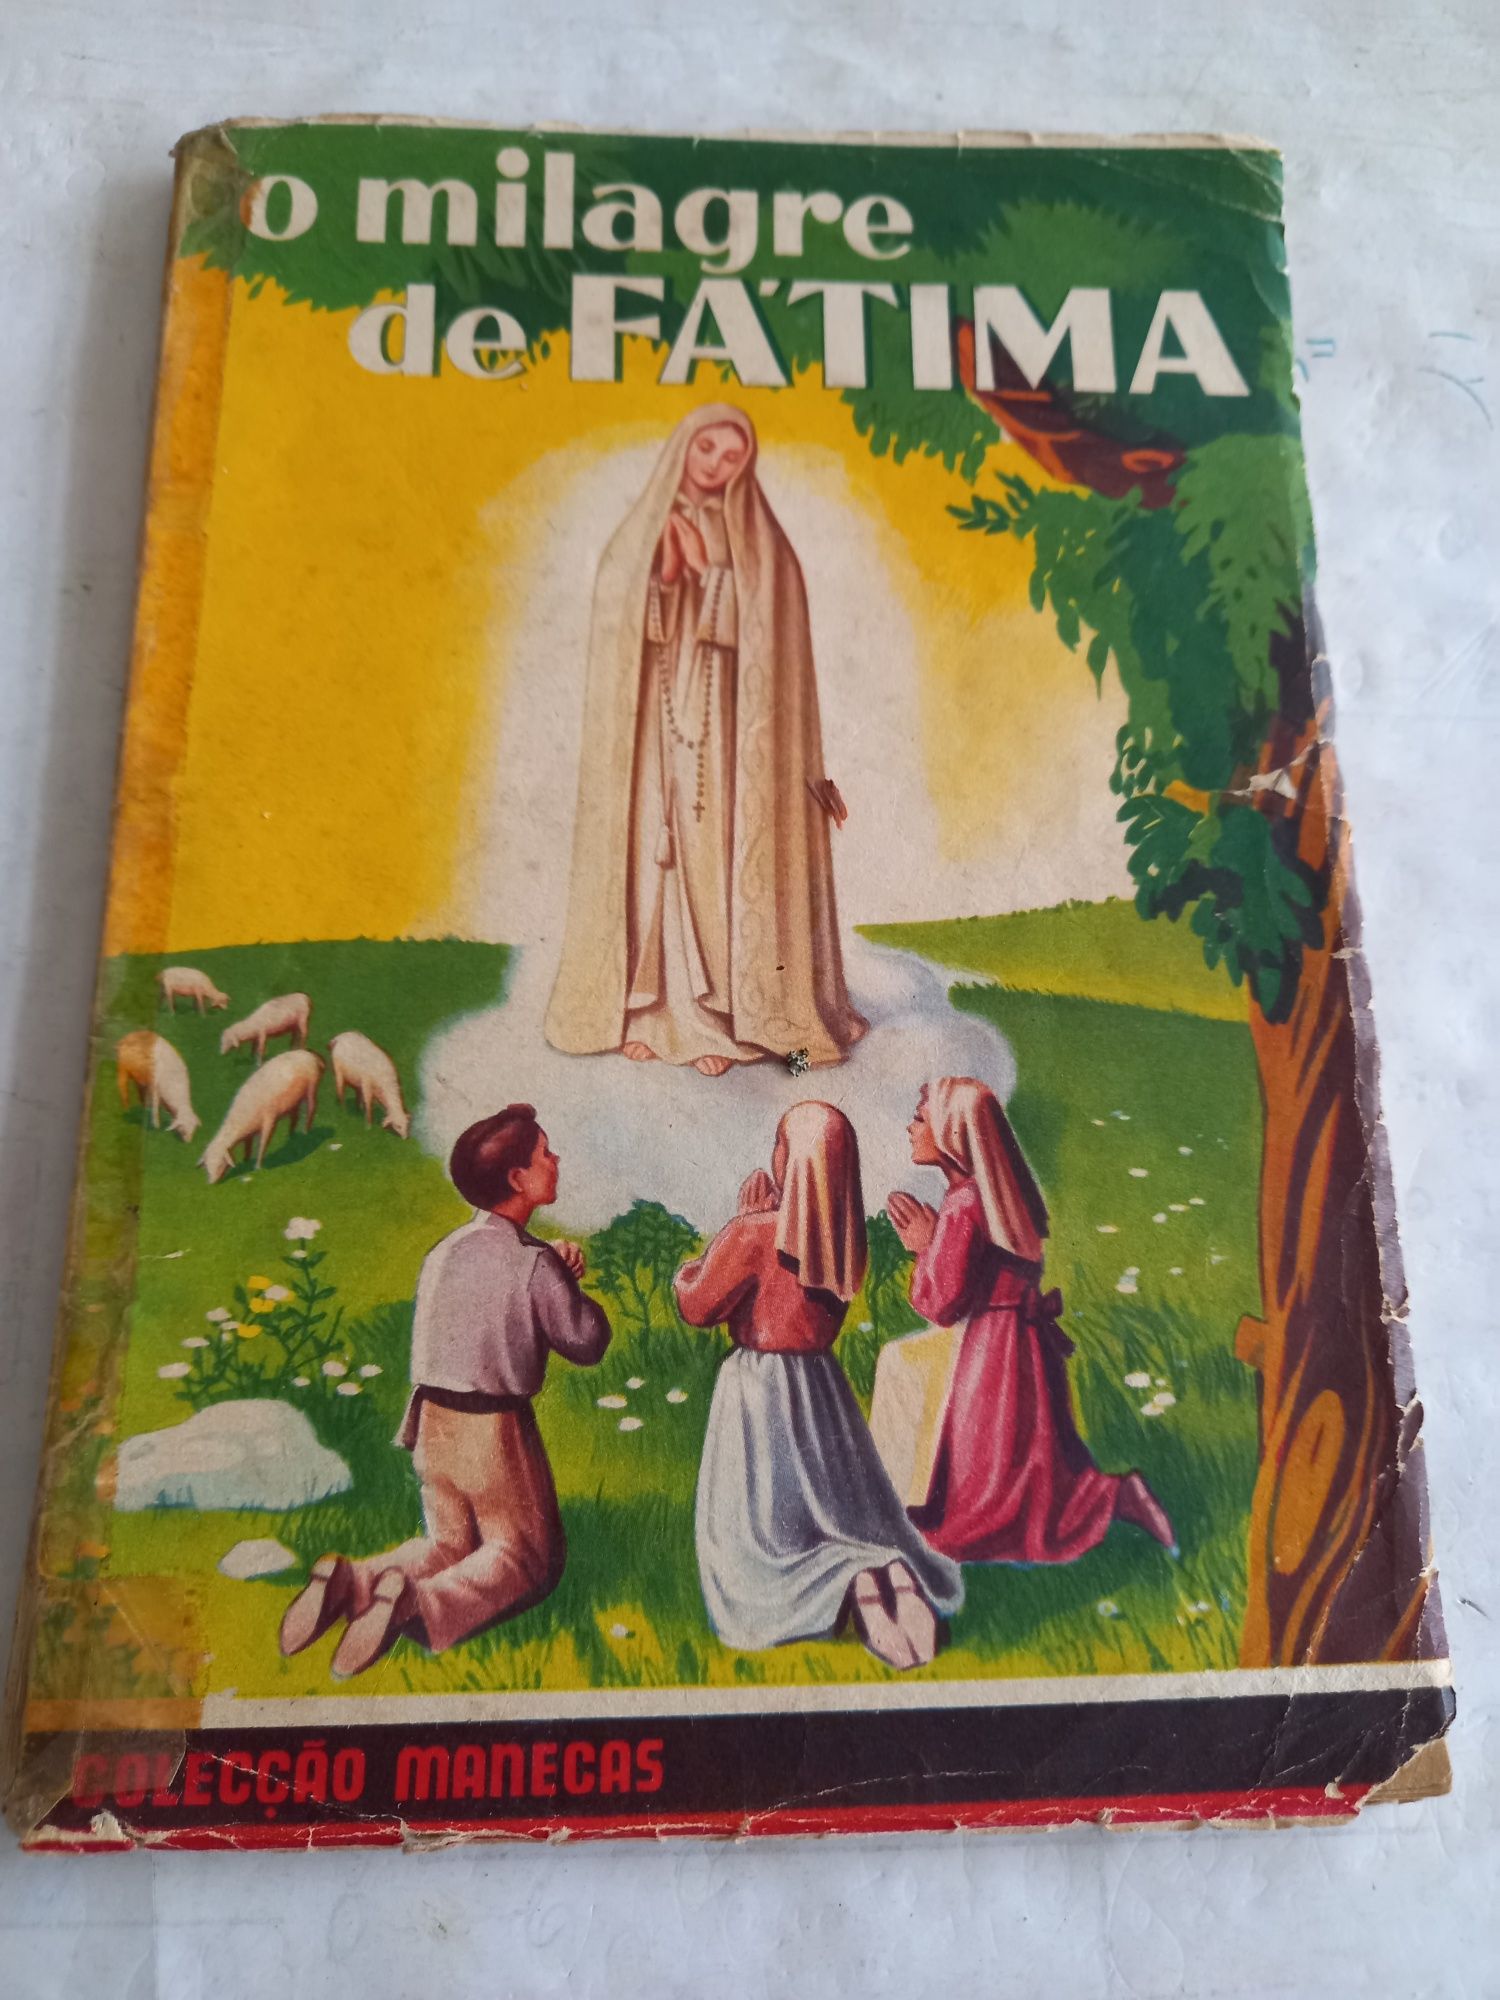 O milagre de Fatima